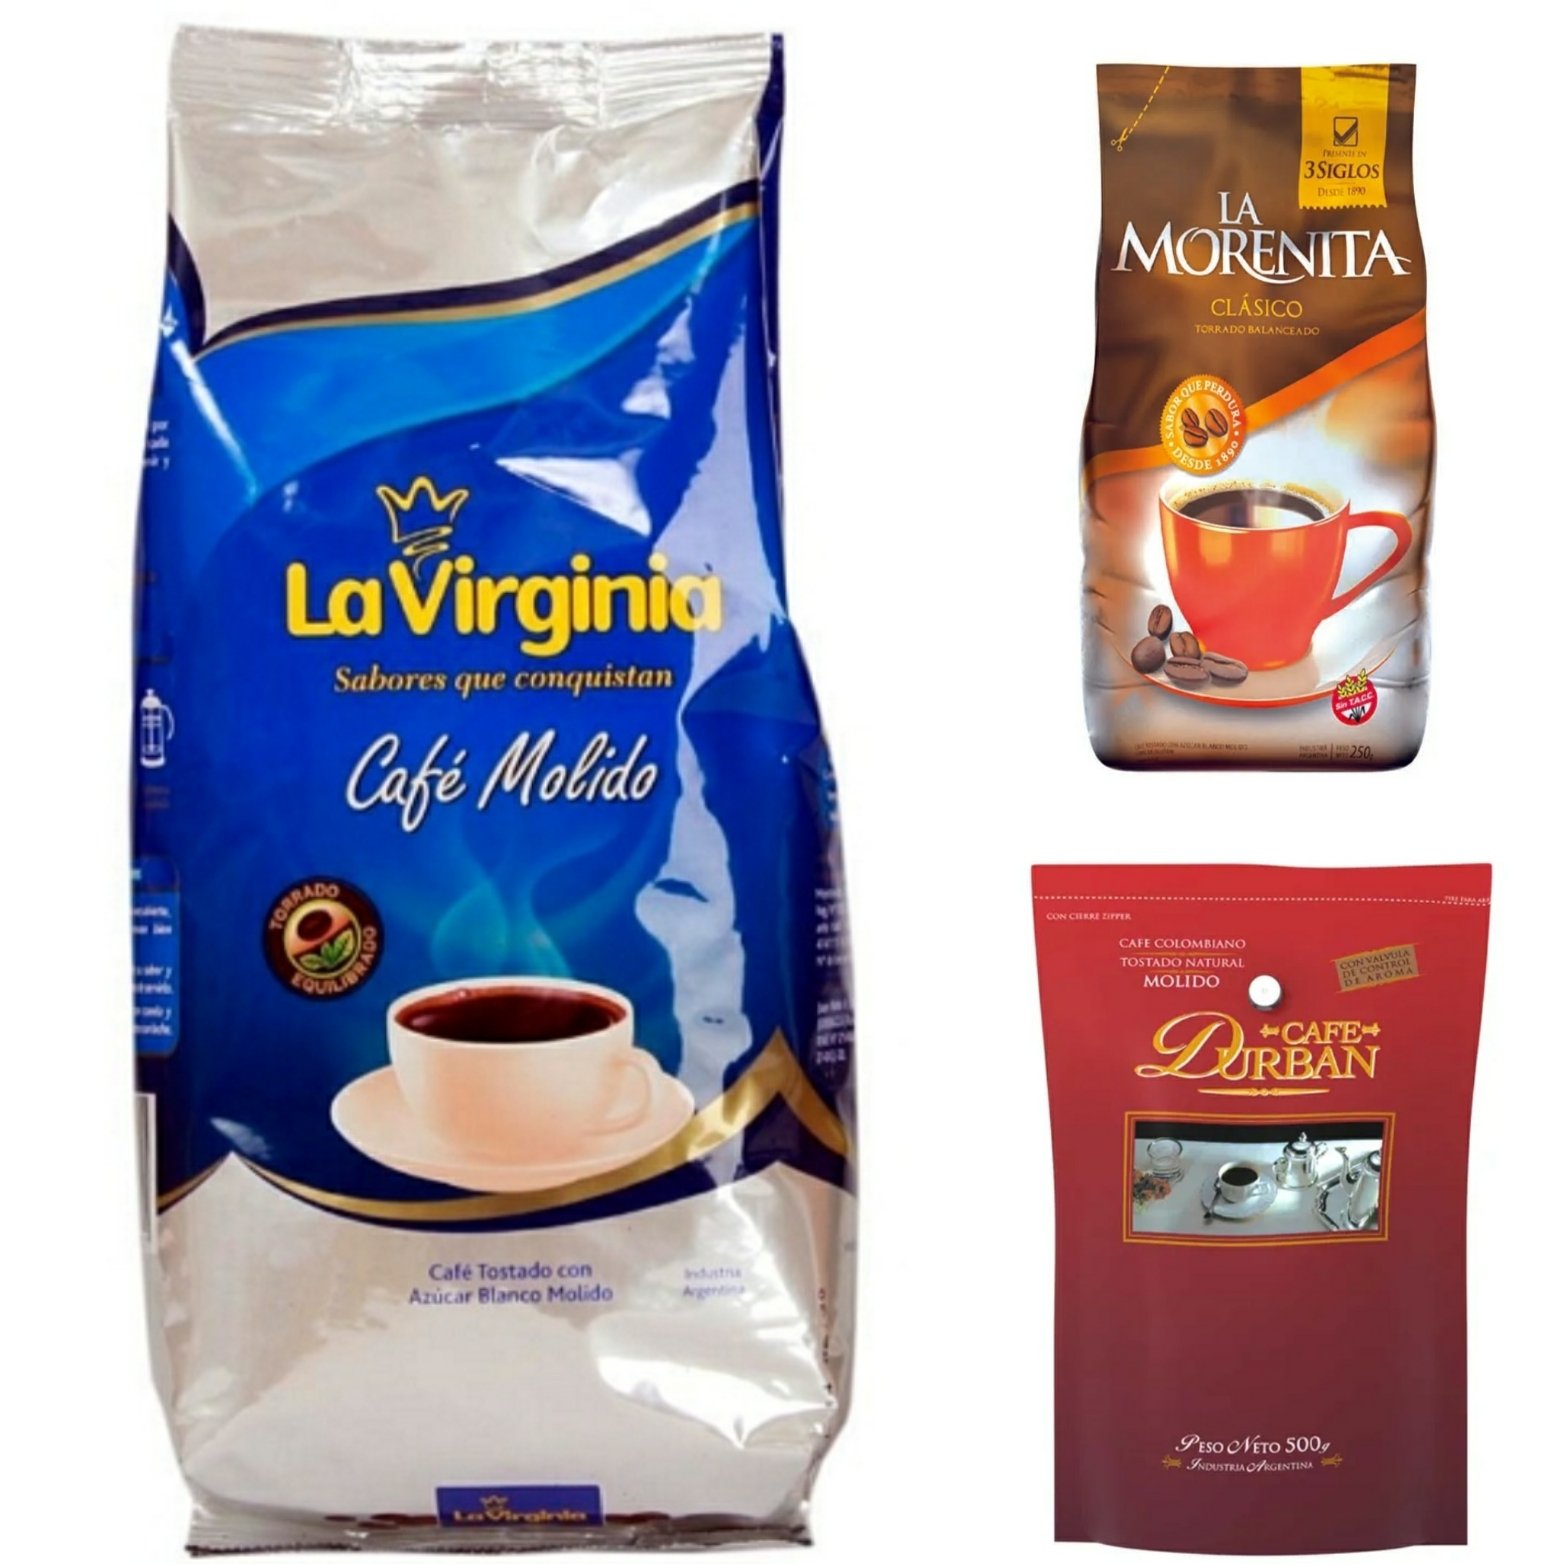 Gorrión justa Conductividad 𝗤𝘂𝗶𝗲𝗻𝗟𝗼𝗙𝗮𝗯𝗿𝗶𝗰𝗮 Twitter'da: "Sabes quién fabrica el café  molido marca #LaVirginia, #LaMorenita y #Durban? Los fabrica Cafés La  Virginia S.A. #primerasmarcas #segundasmarcas #quienlofabrica Leer más...  https://t.co/aC0qzakWCv https://t.co ...